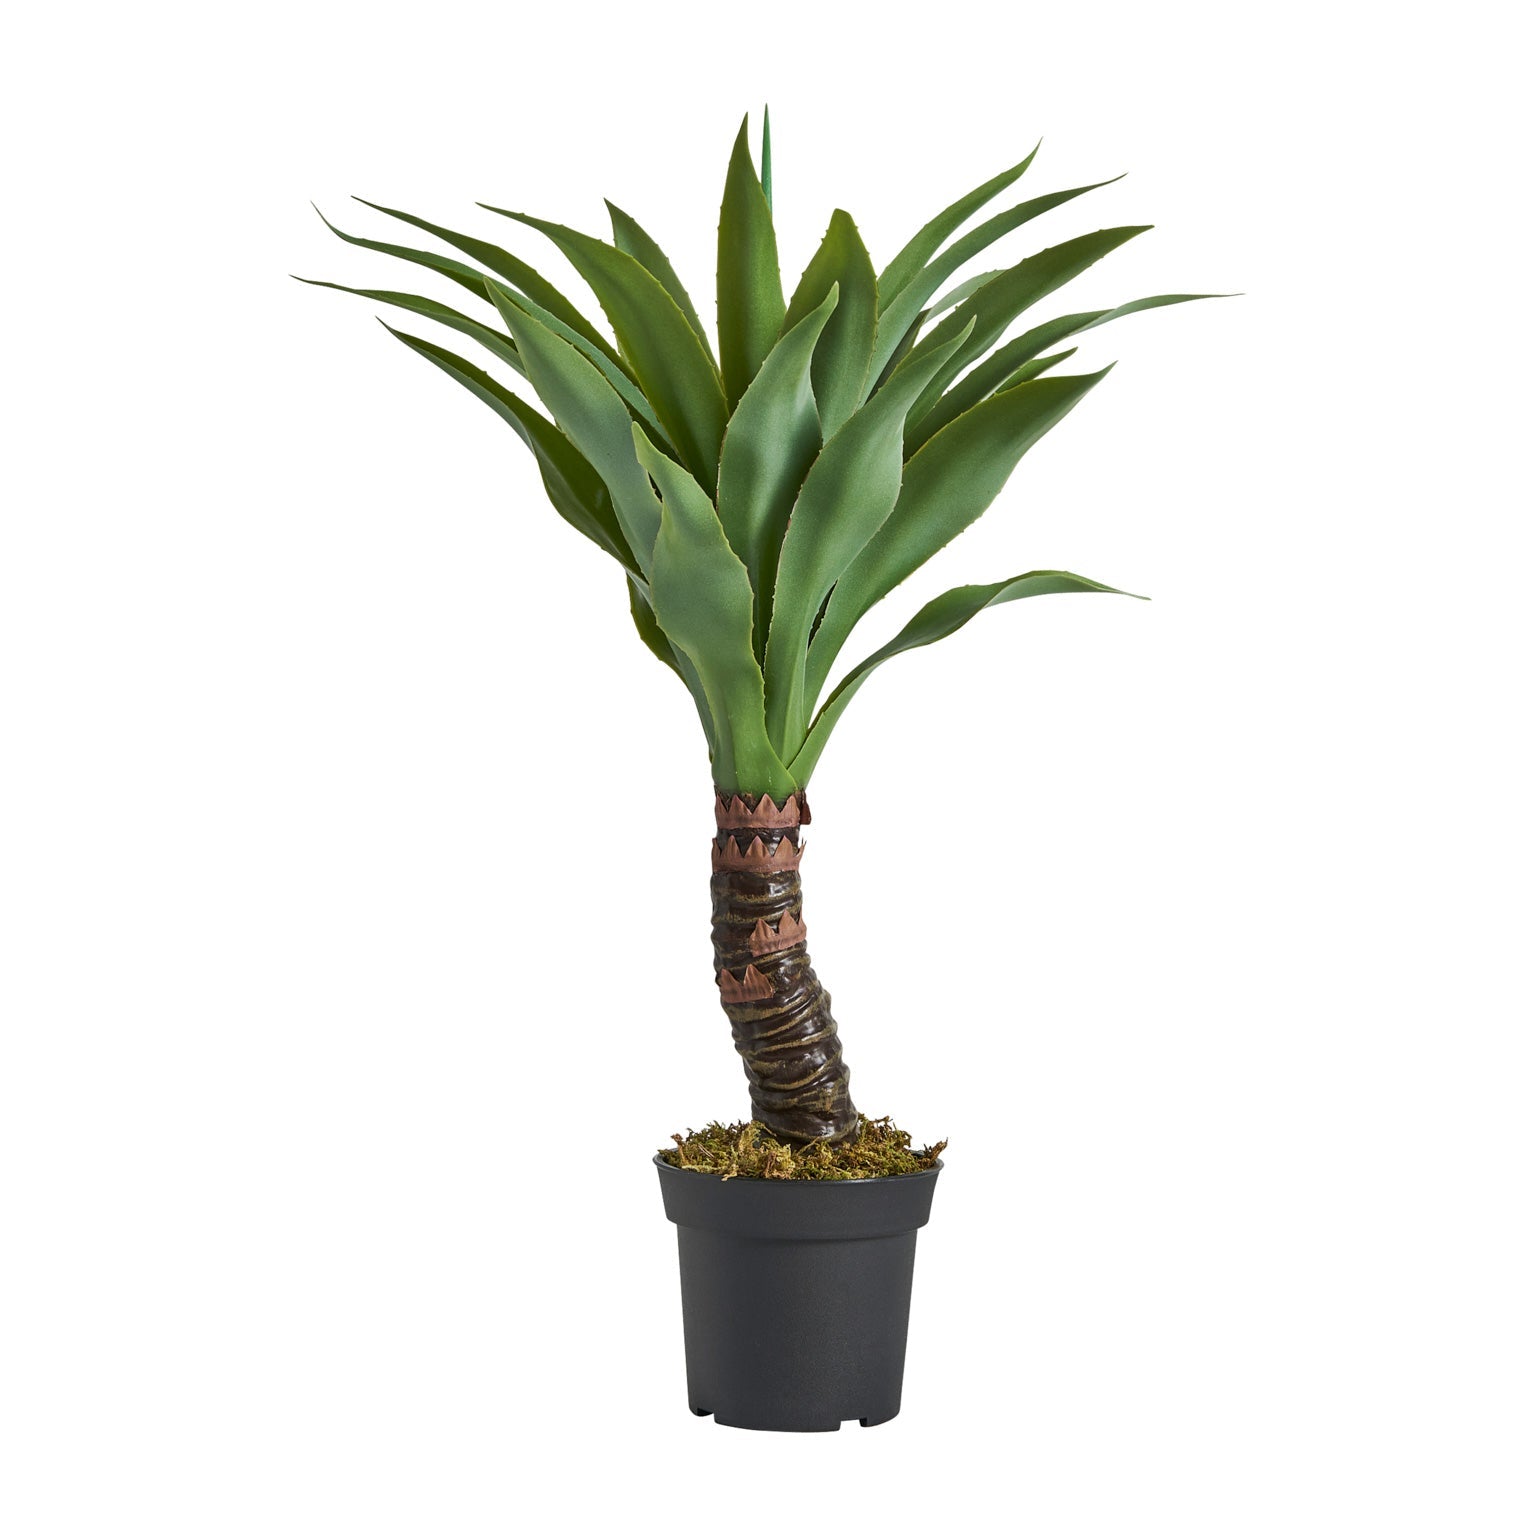 Planta Yucca 35x65x35 cm. - Plantas artificiales decorativas - Granada Maison